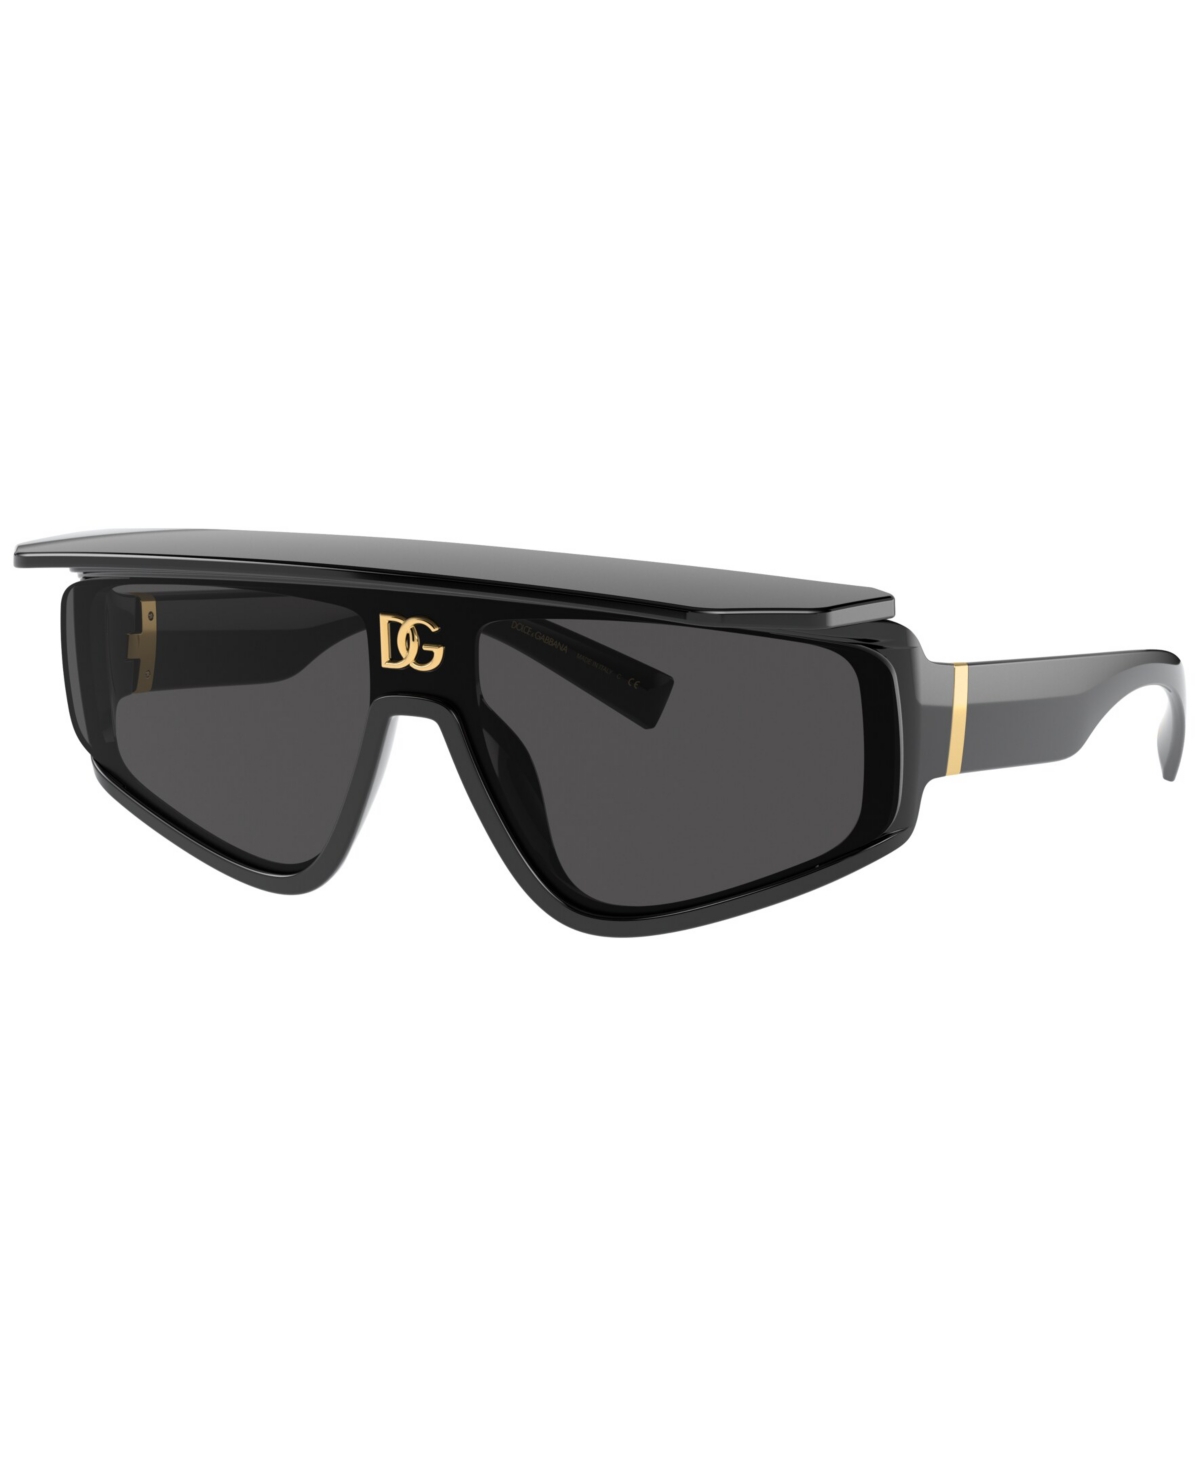 Dolce&Gabbana Men's Sunglasses, DG6177 - White